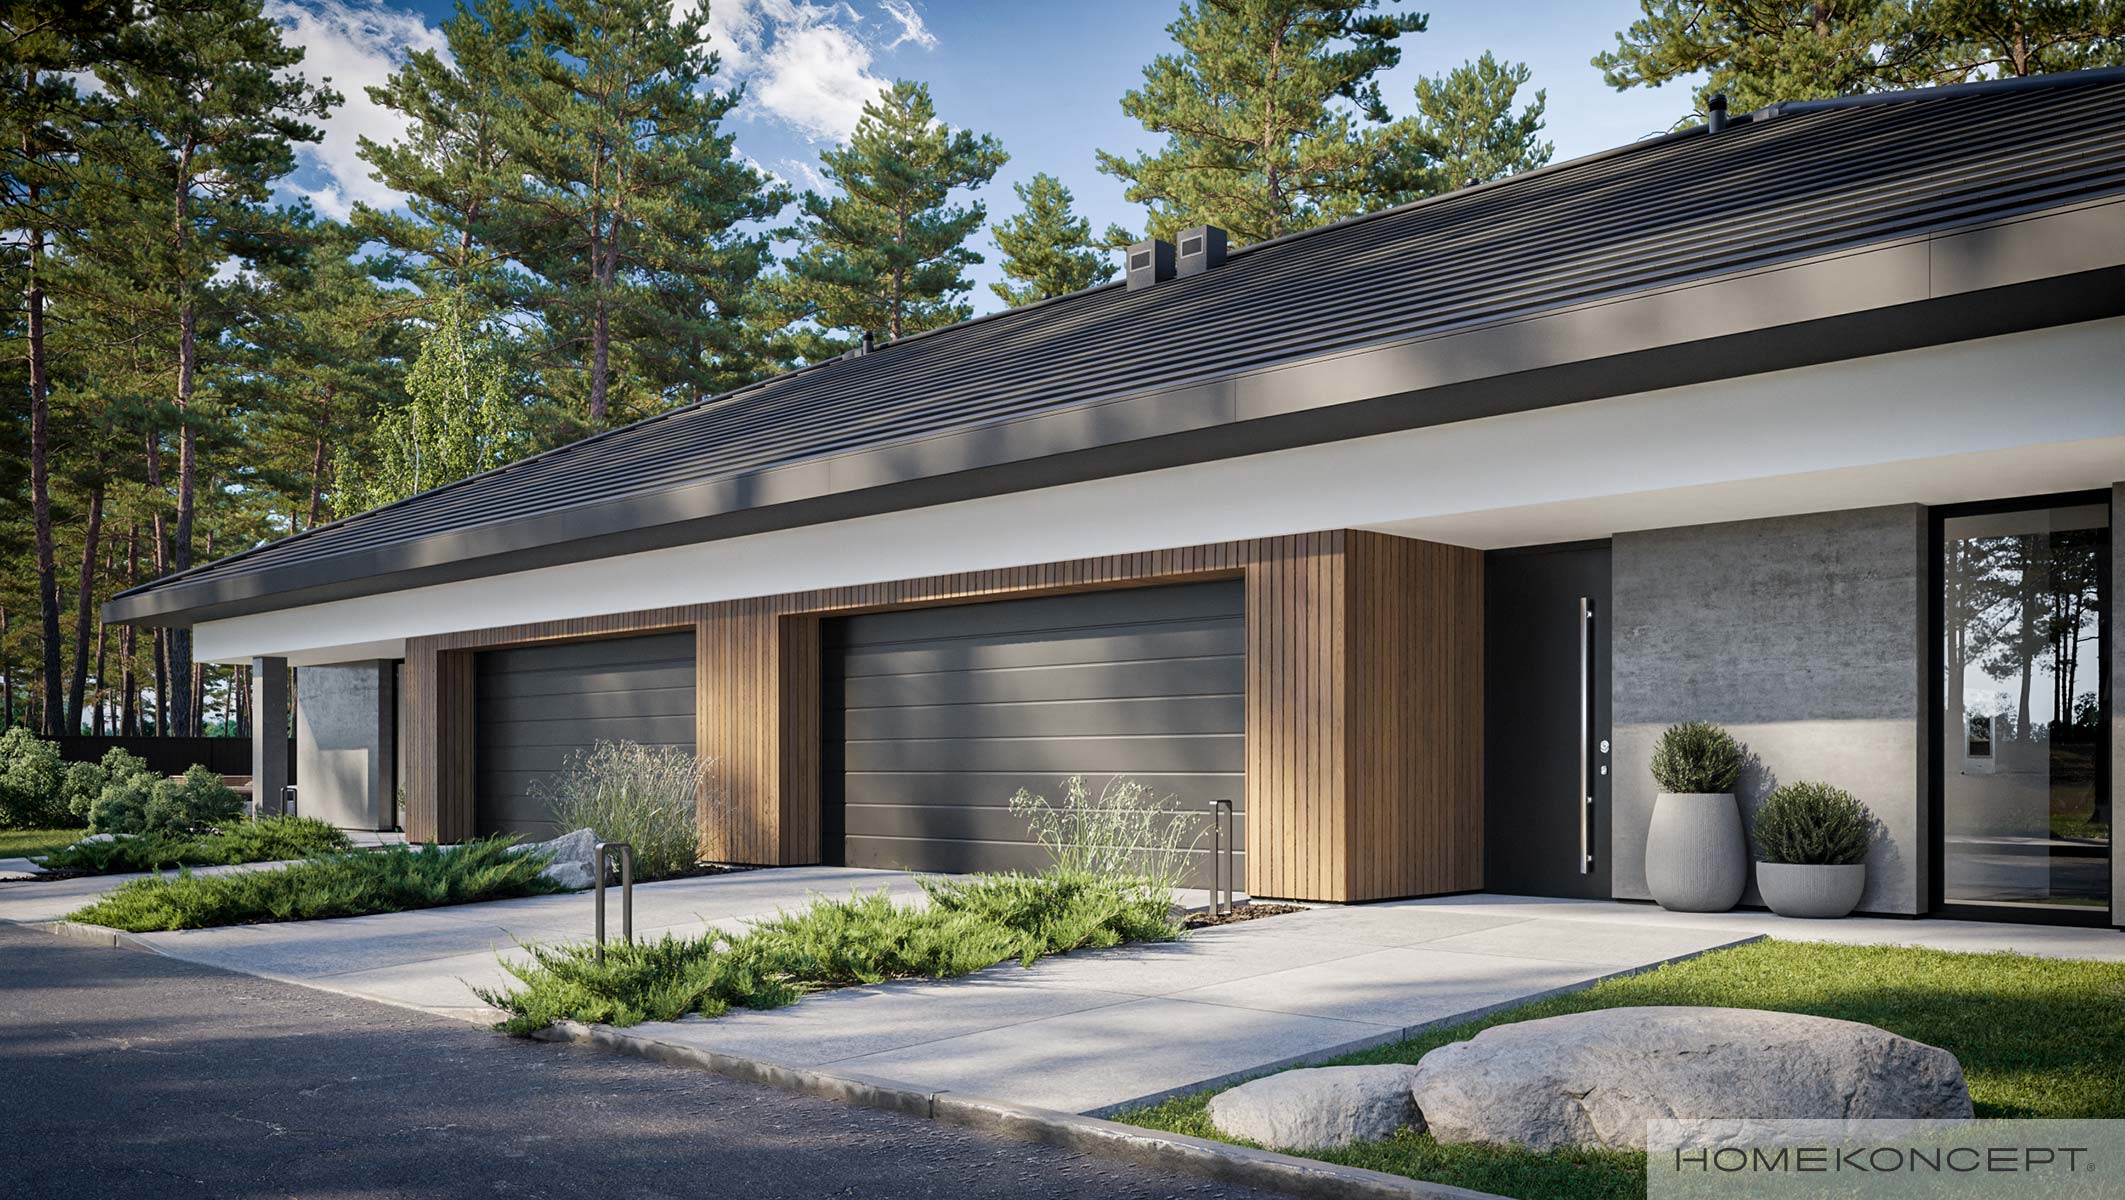 Projekt domów bliźniaczych homekoncept 97 b g2 - widok na strefę wejściową i wjazd do garażu.